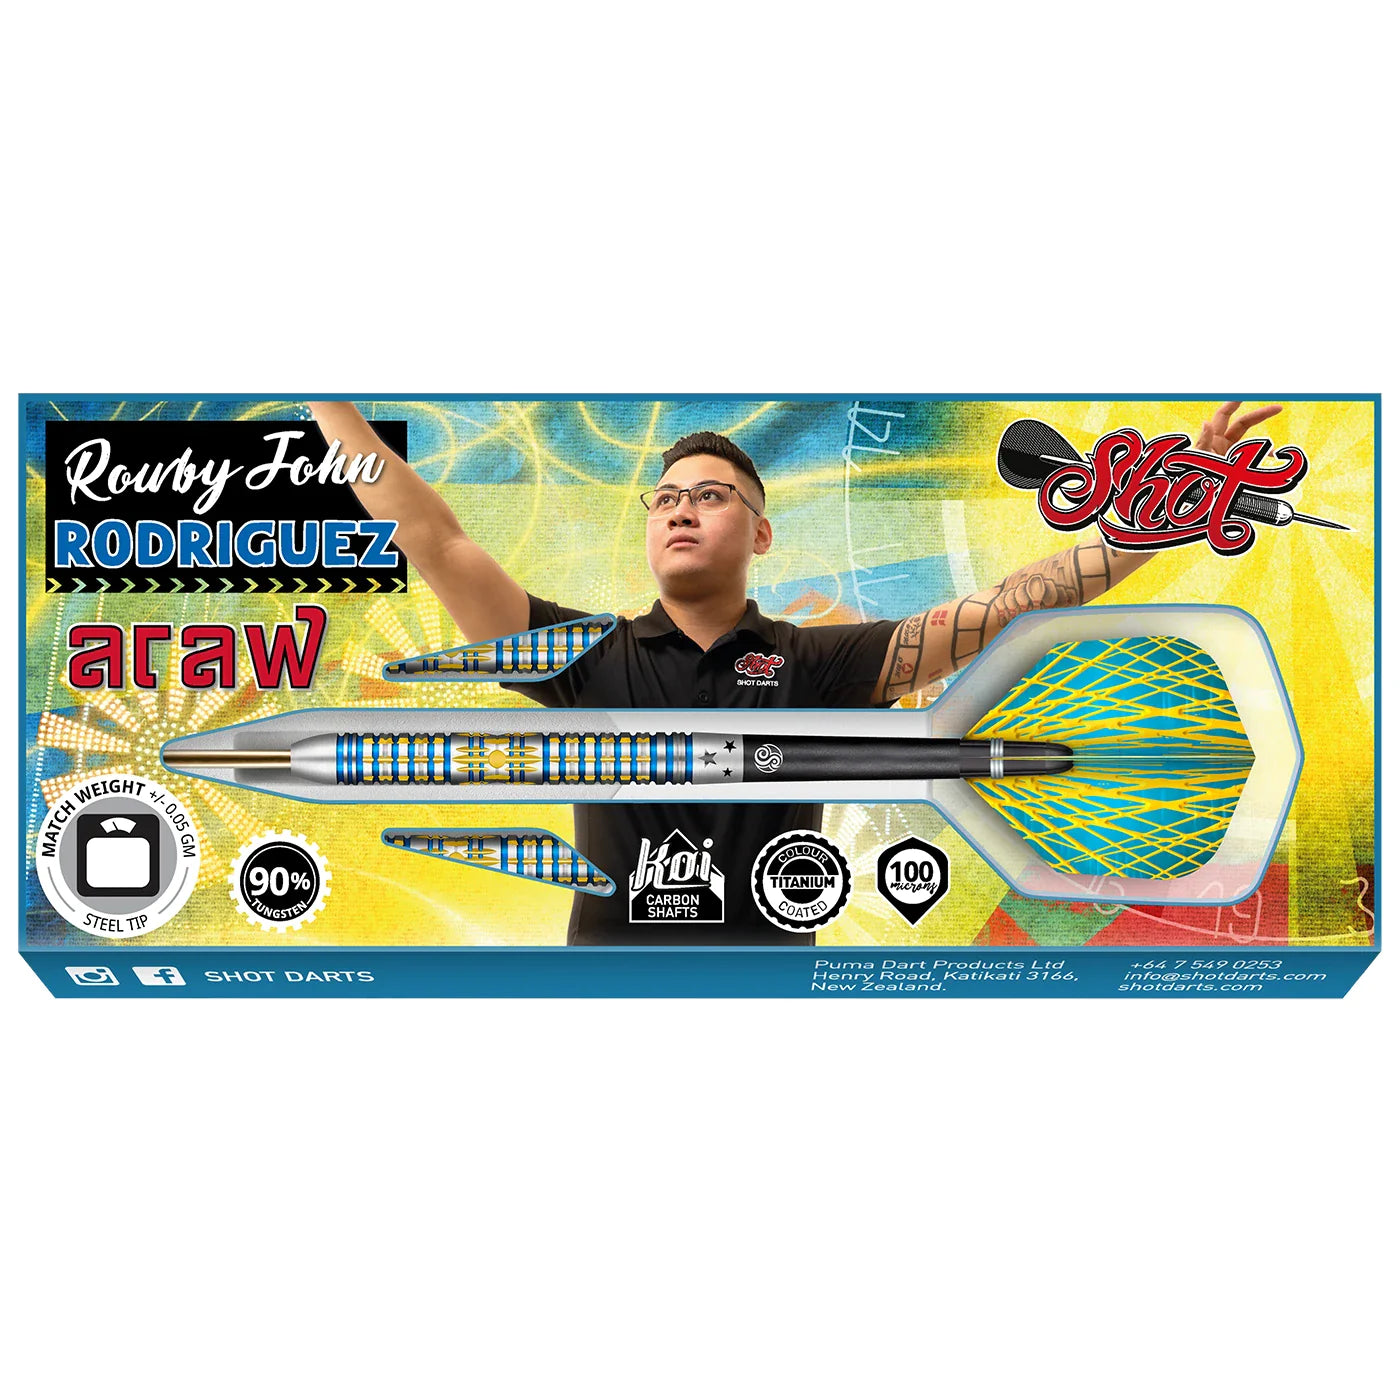 Shot Rowby-John Rodriguez Araw 21g 90% Tungsten Steel Tip Darts